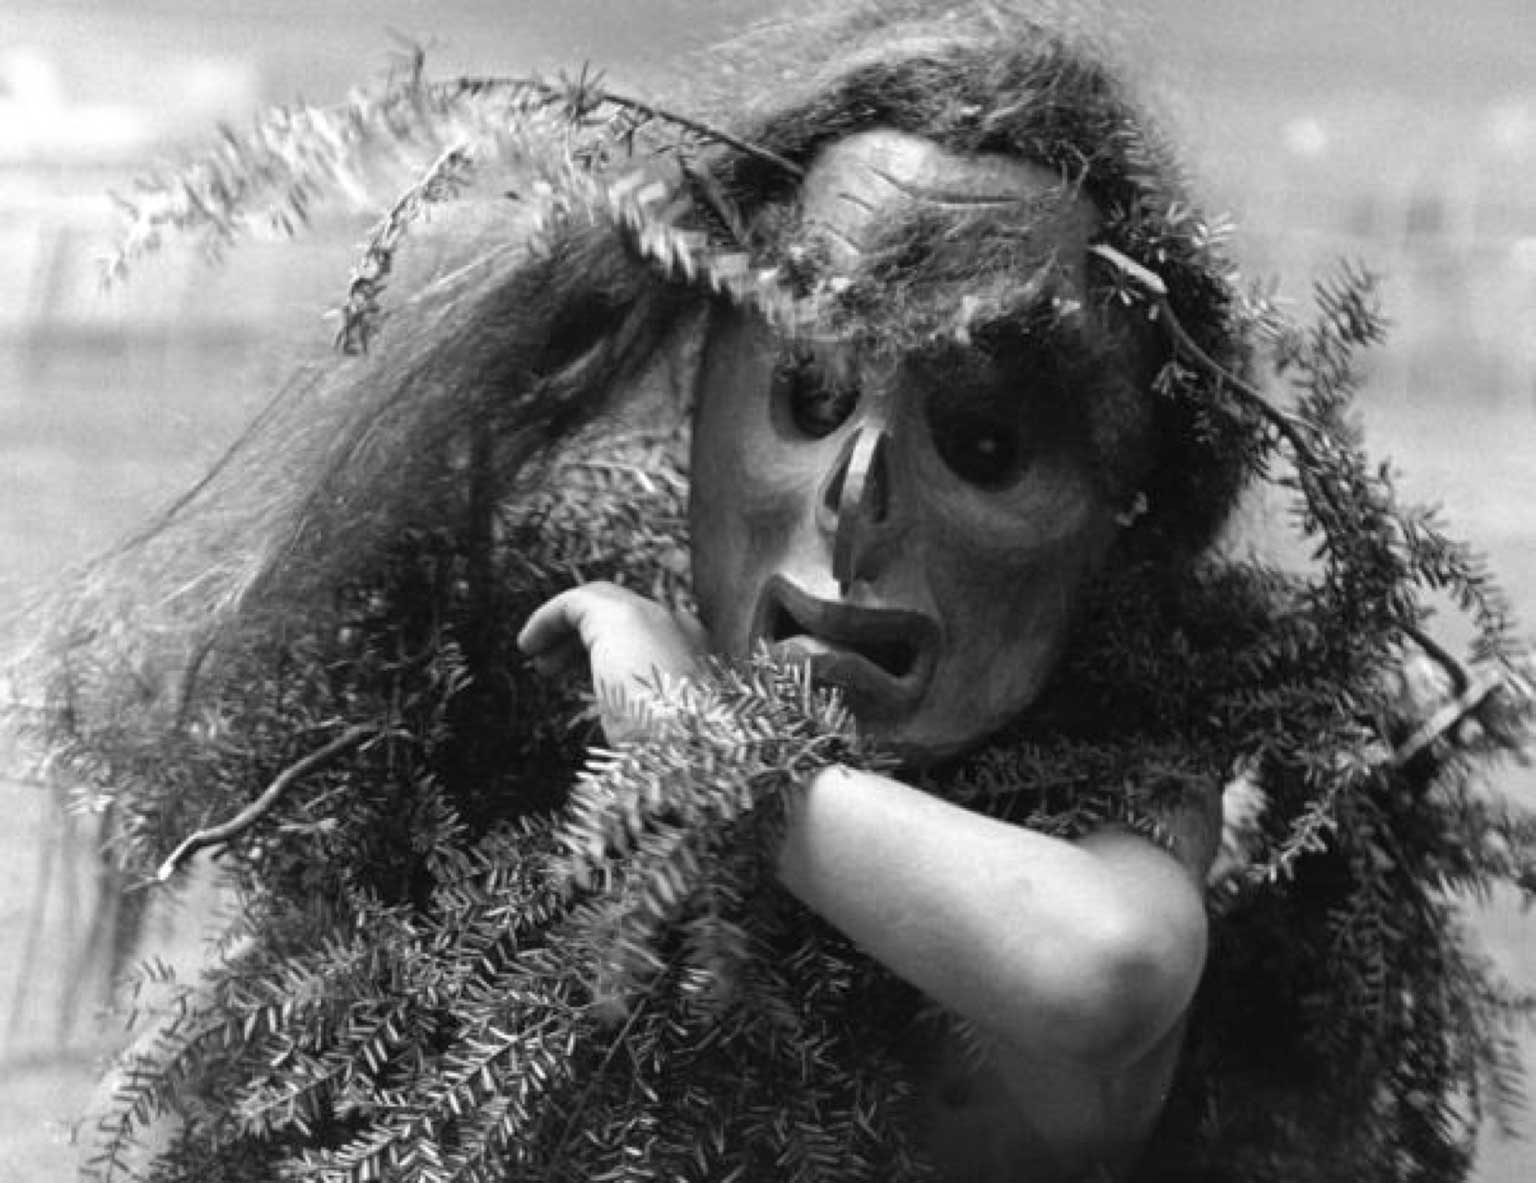 Photographie sépia montrant un danseur Bakwas portant un masque, des branches de cèdre décorent sa tête et ses poignets, un bras relevé cache son visage